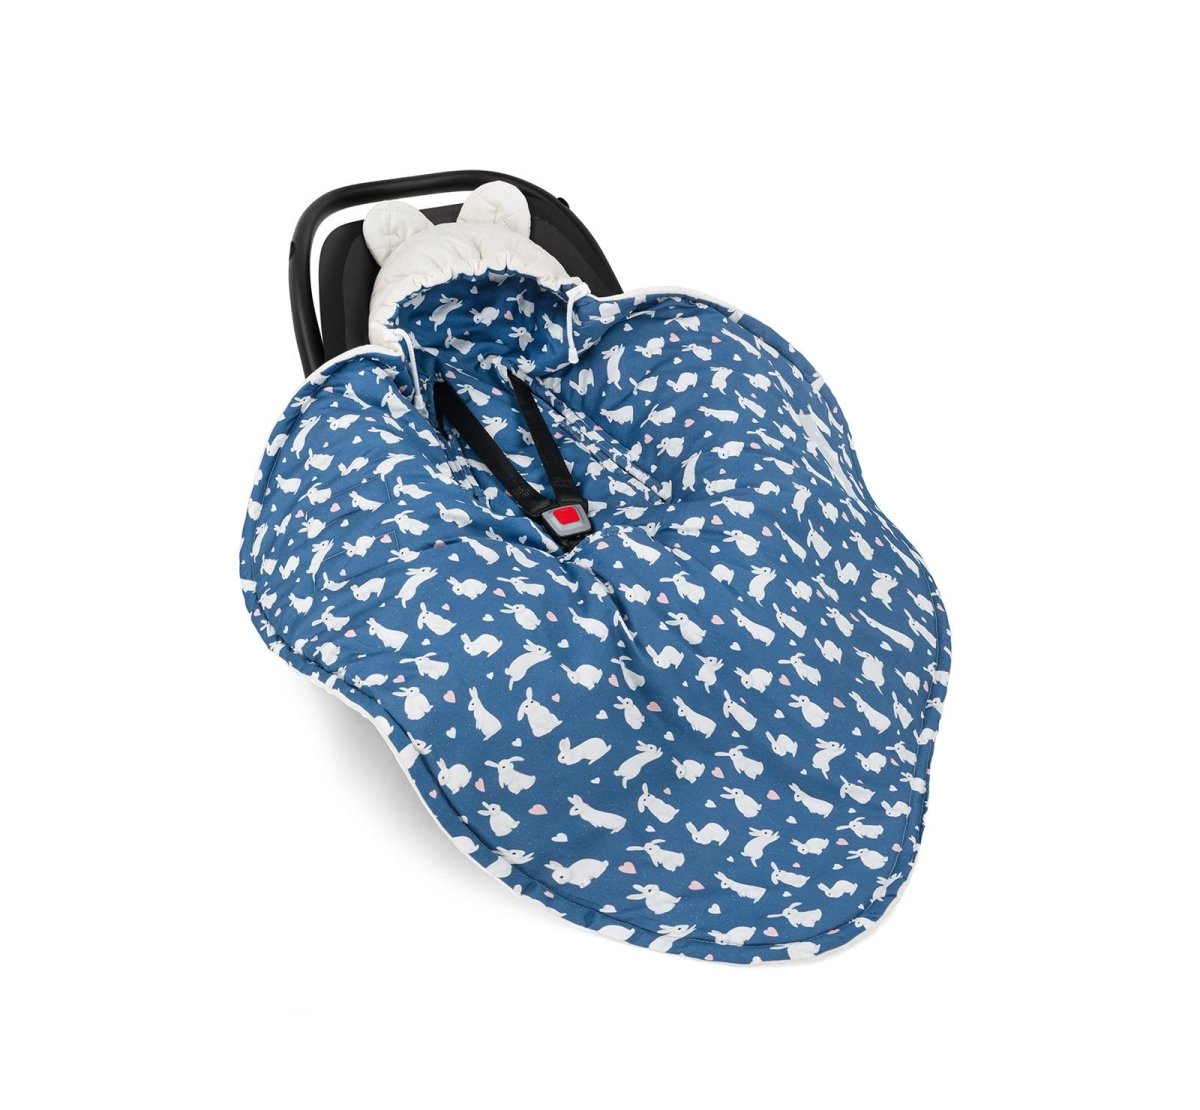 Couverture bébé pour siège auto Petits amis Beige et Bleu marine guguplanet 